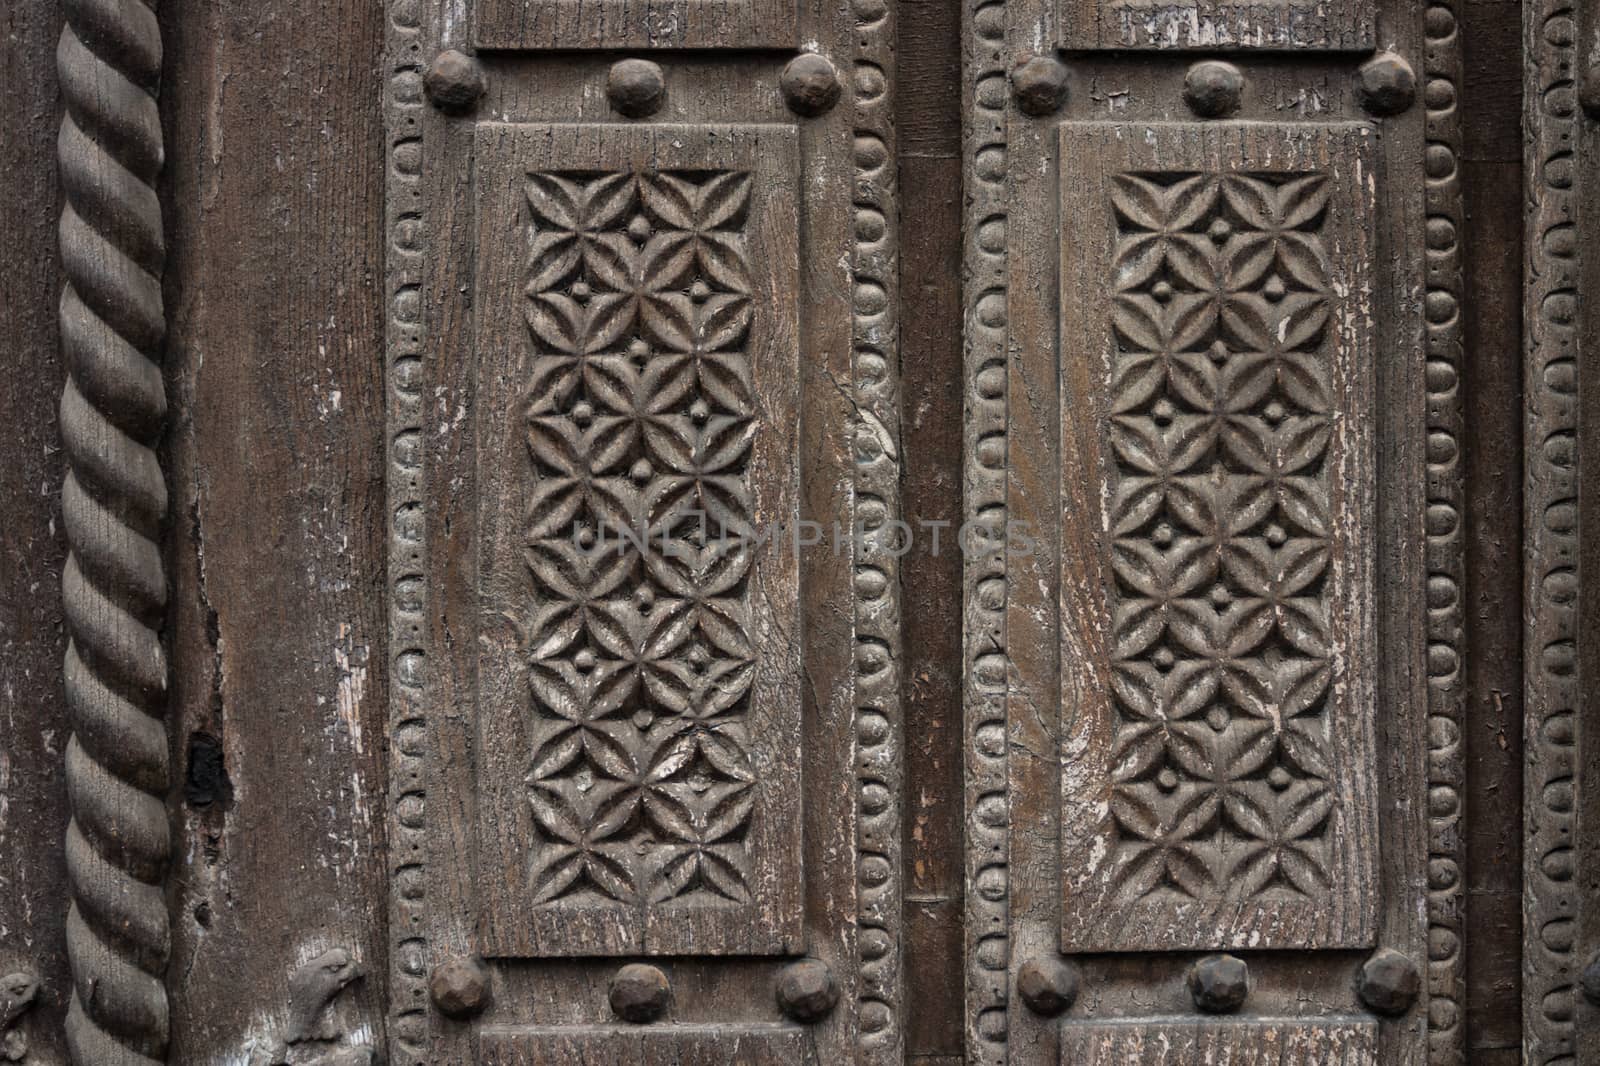 Delicate wooden carving in a old door